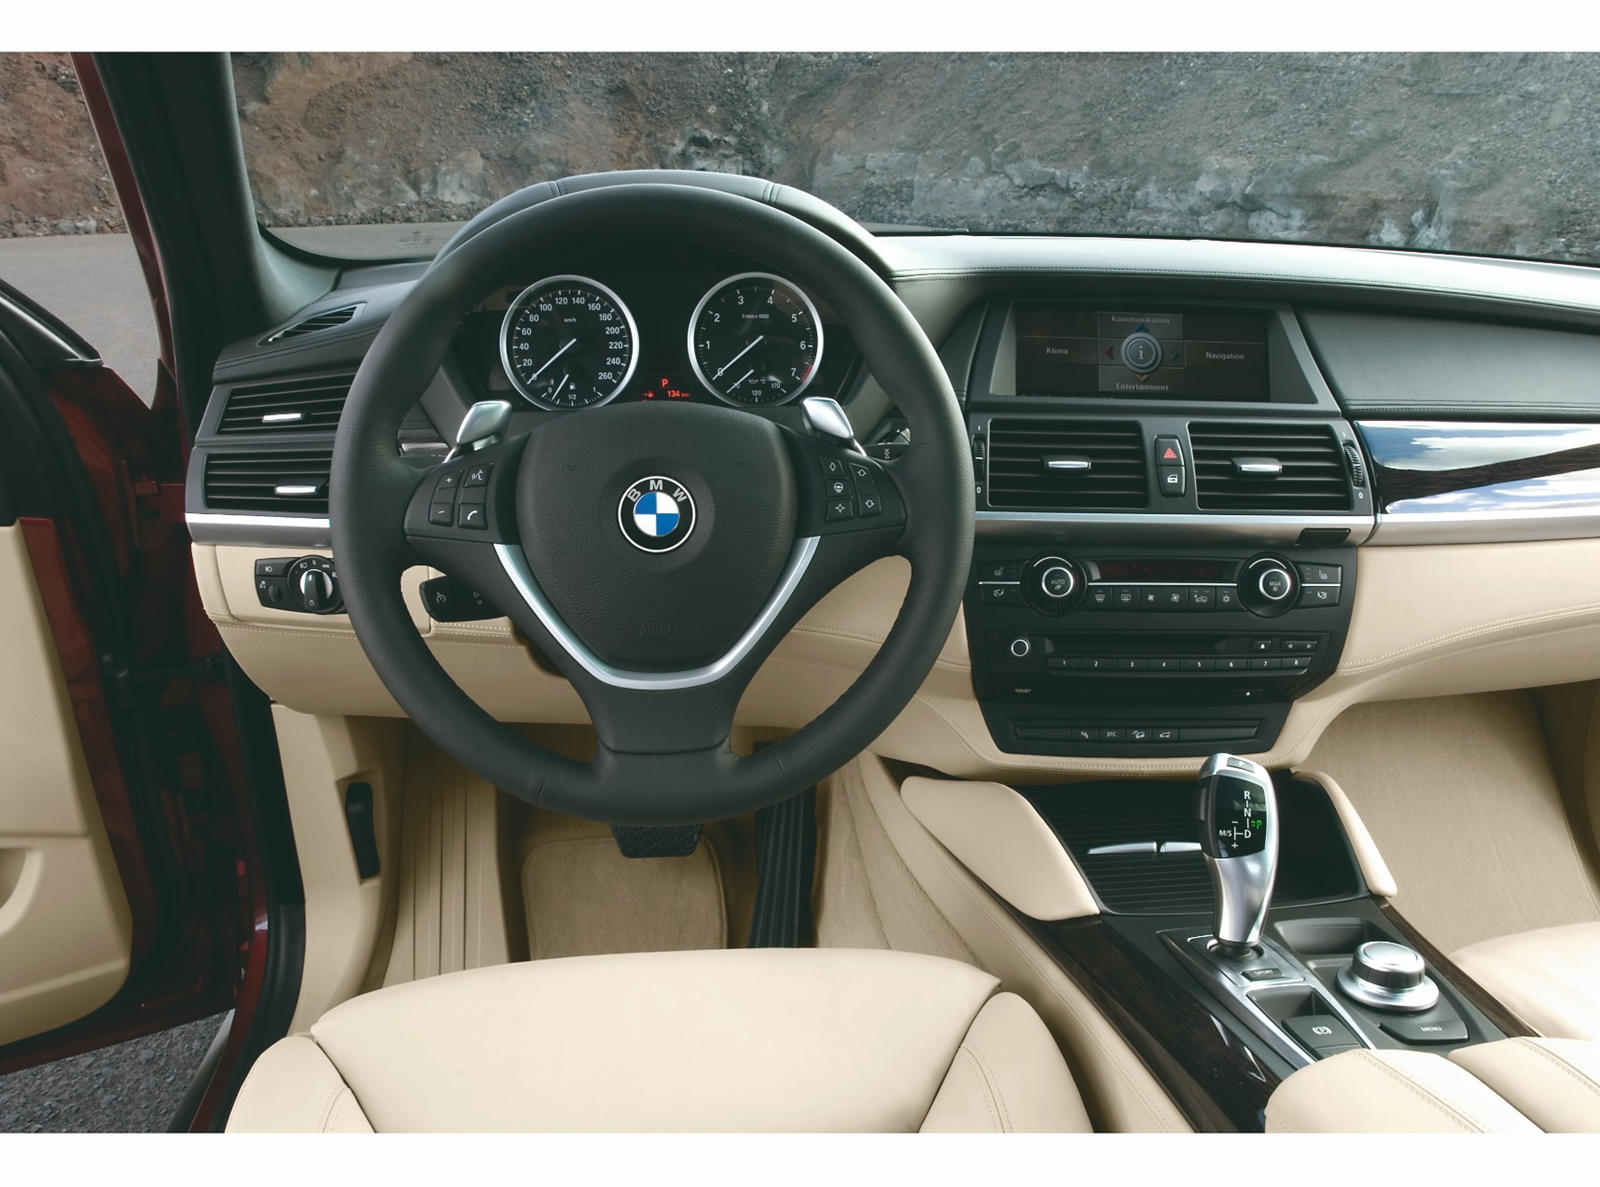 2010 BMW X6 Interior Photos | CarBuzz